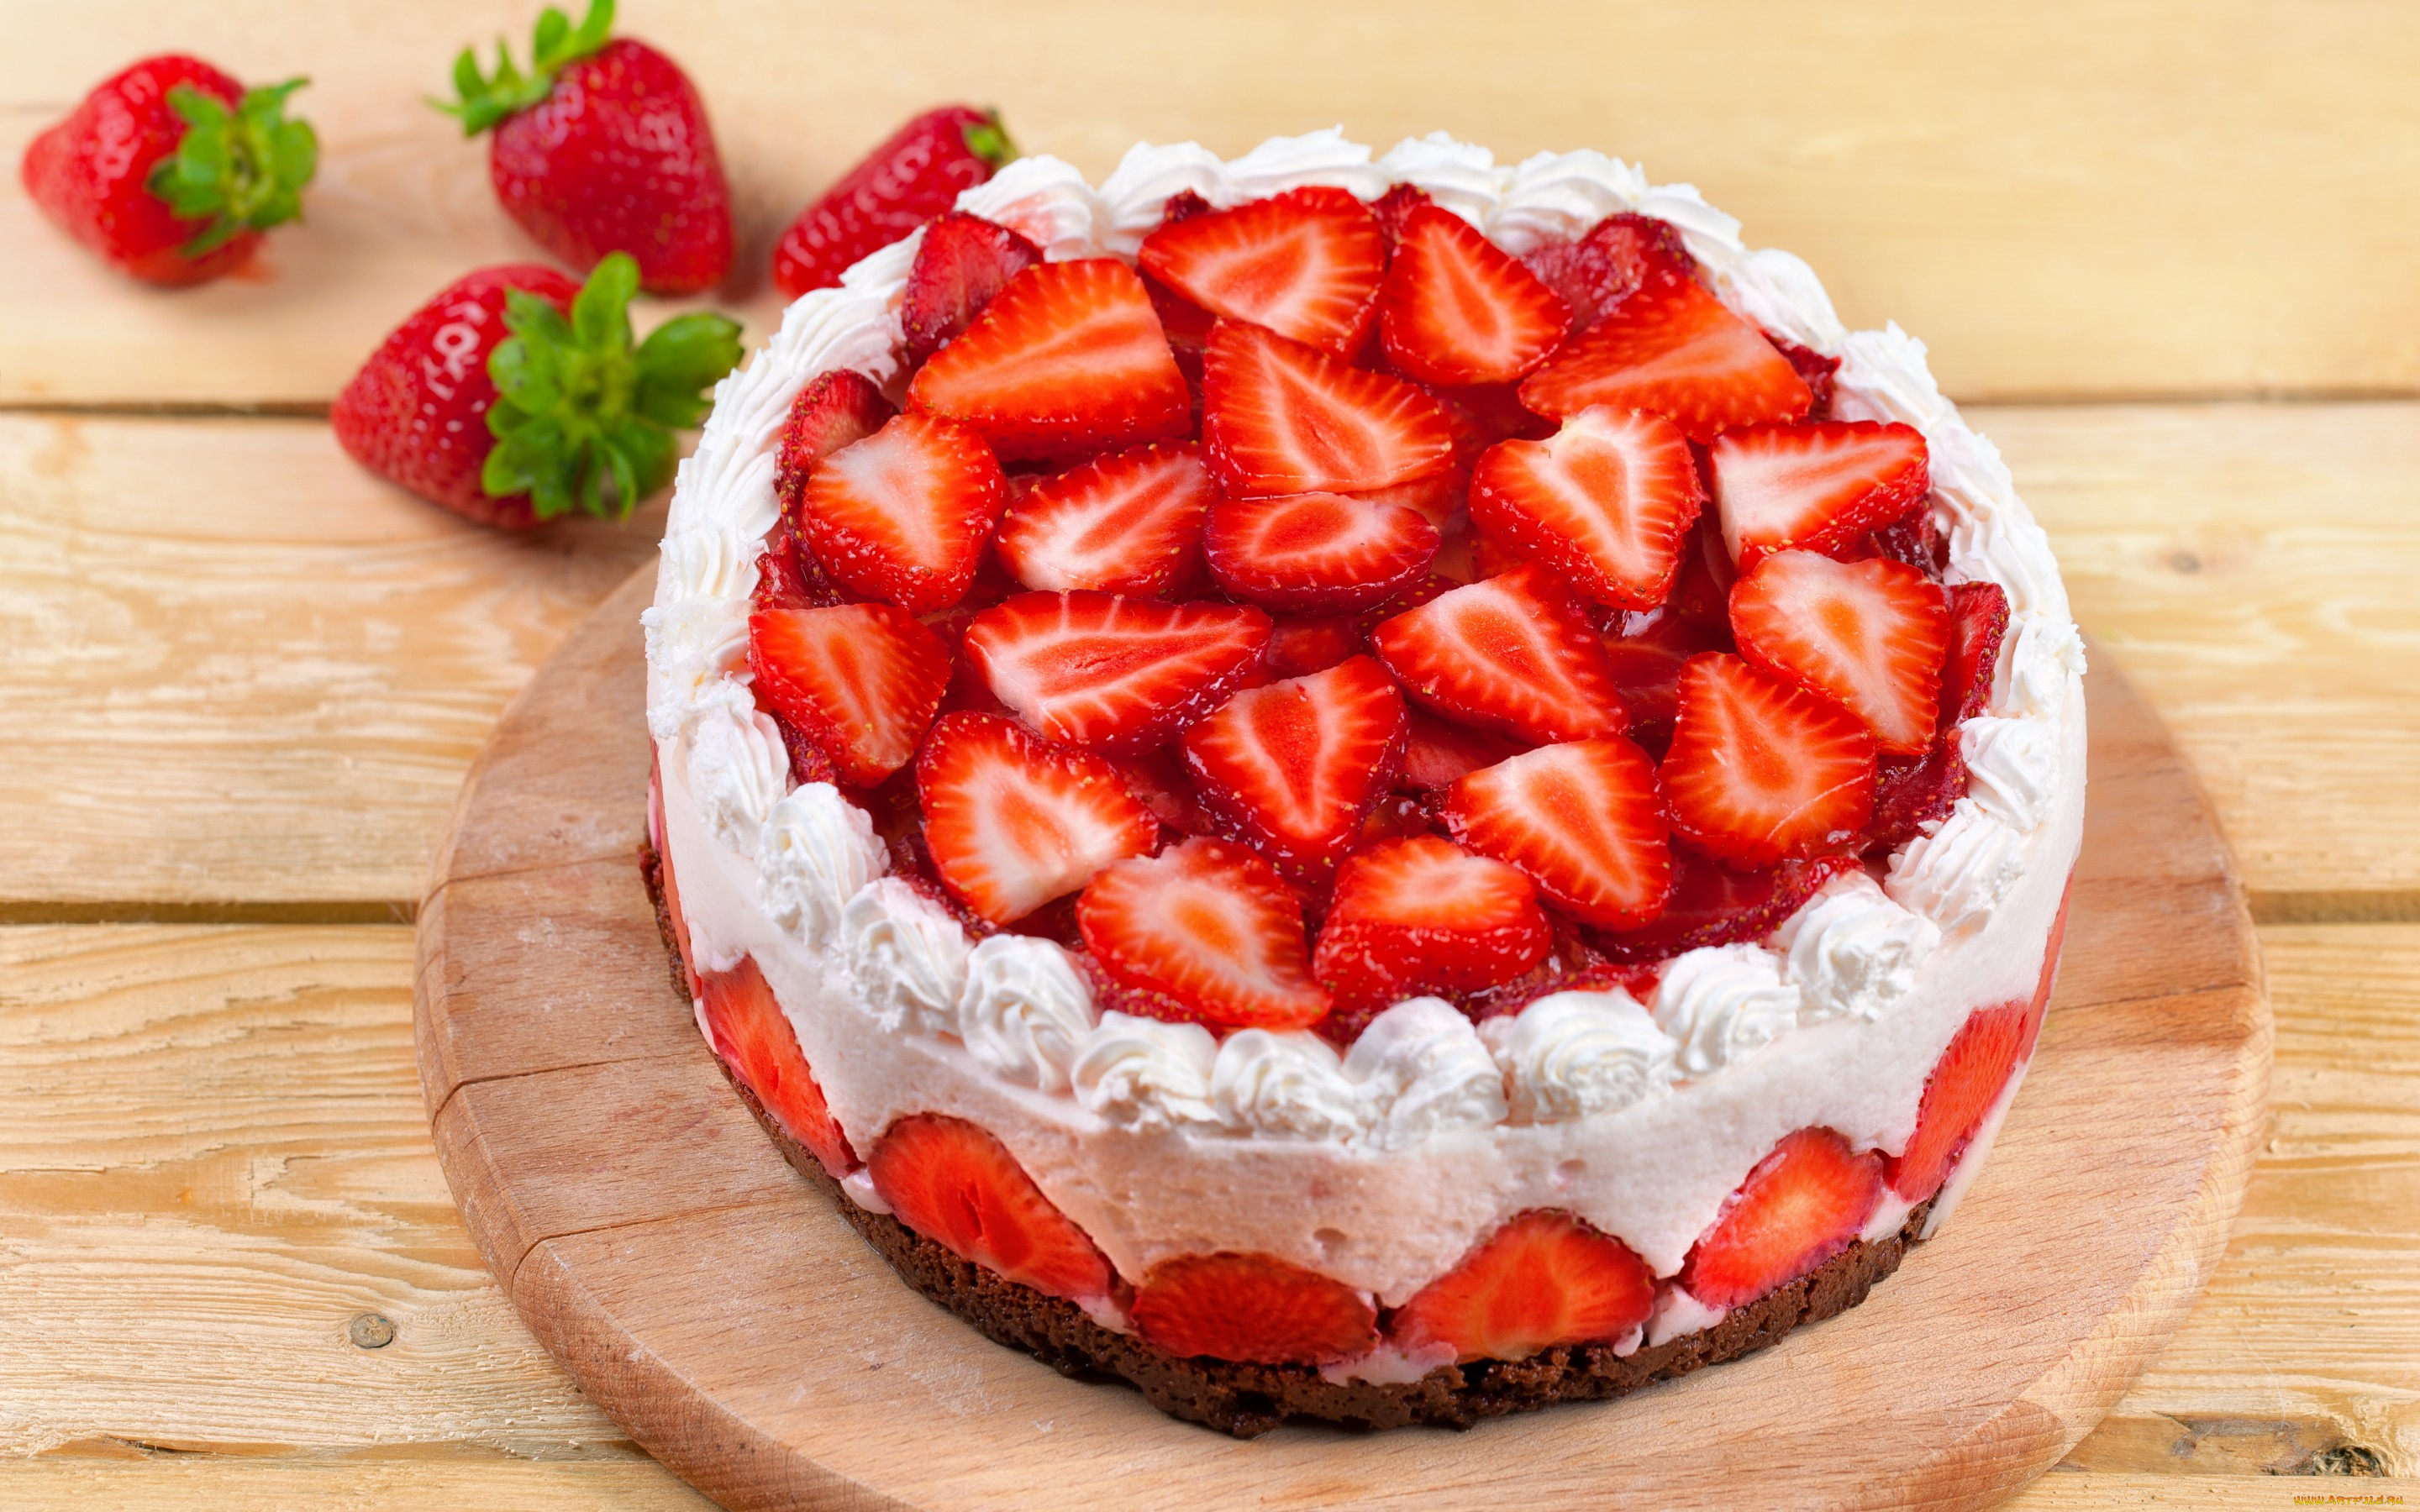 еда, торты, сладкое, ягоды, клубника, пирожное, торт, десерт, cake, dessert, крем, чизкейк, cheesecake, food, berries, strawberries